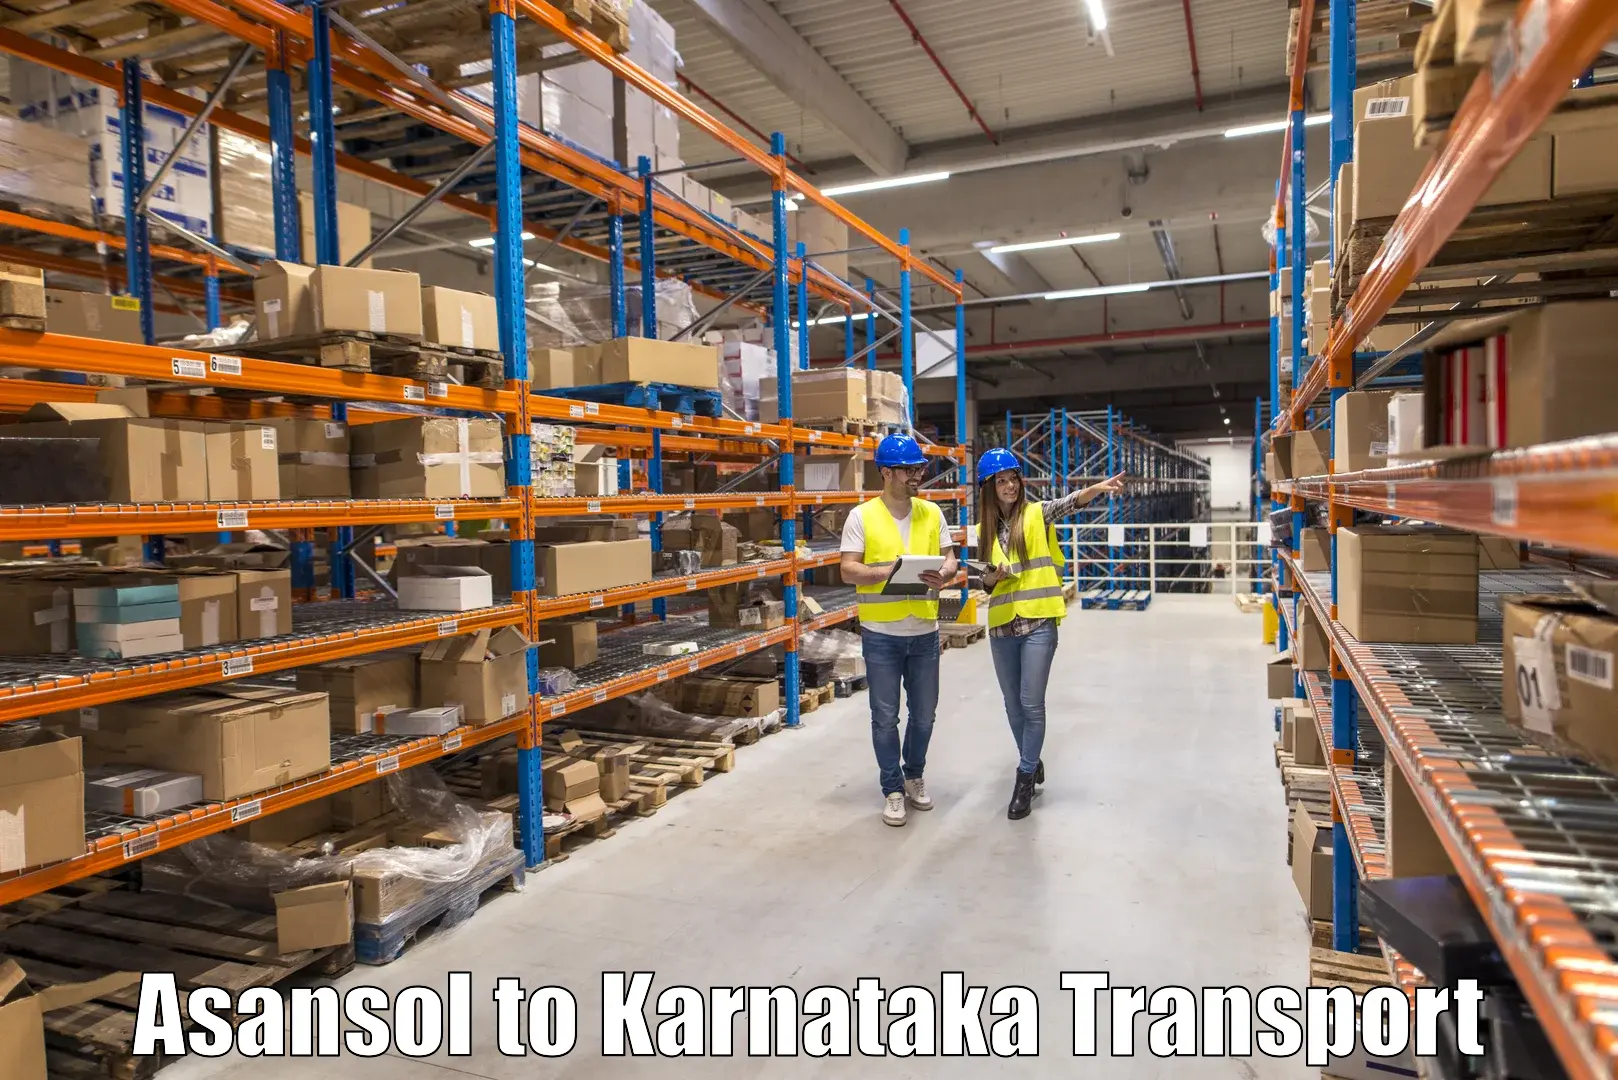 Container transport service Asansol to Kalaburagi